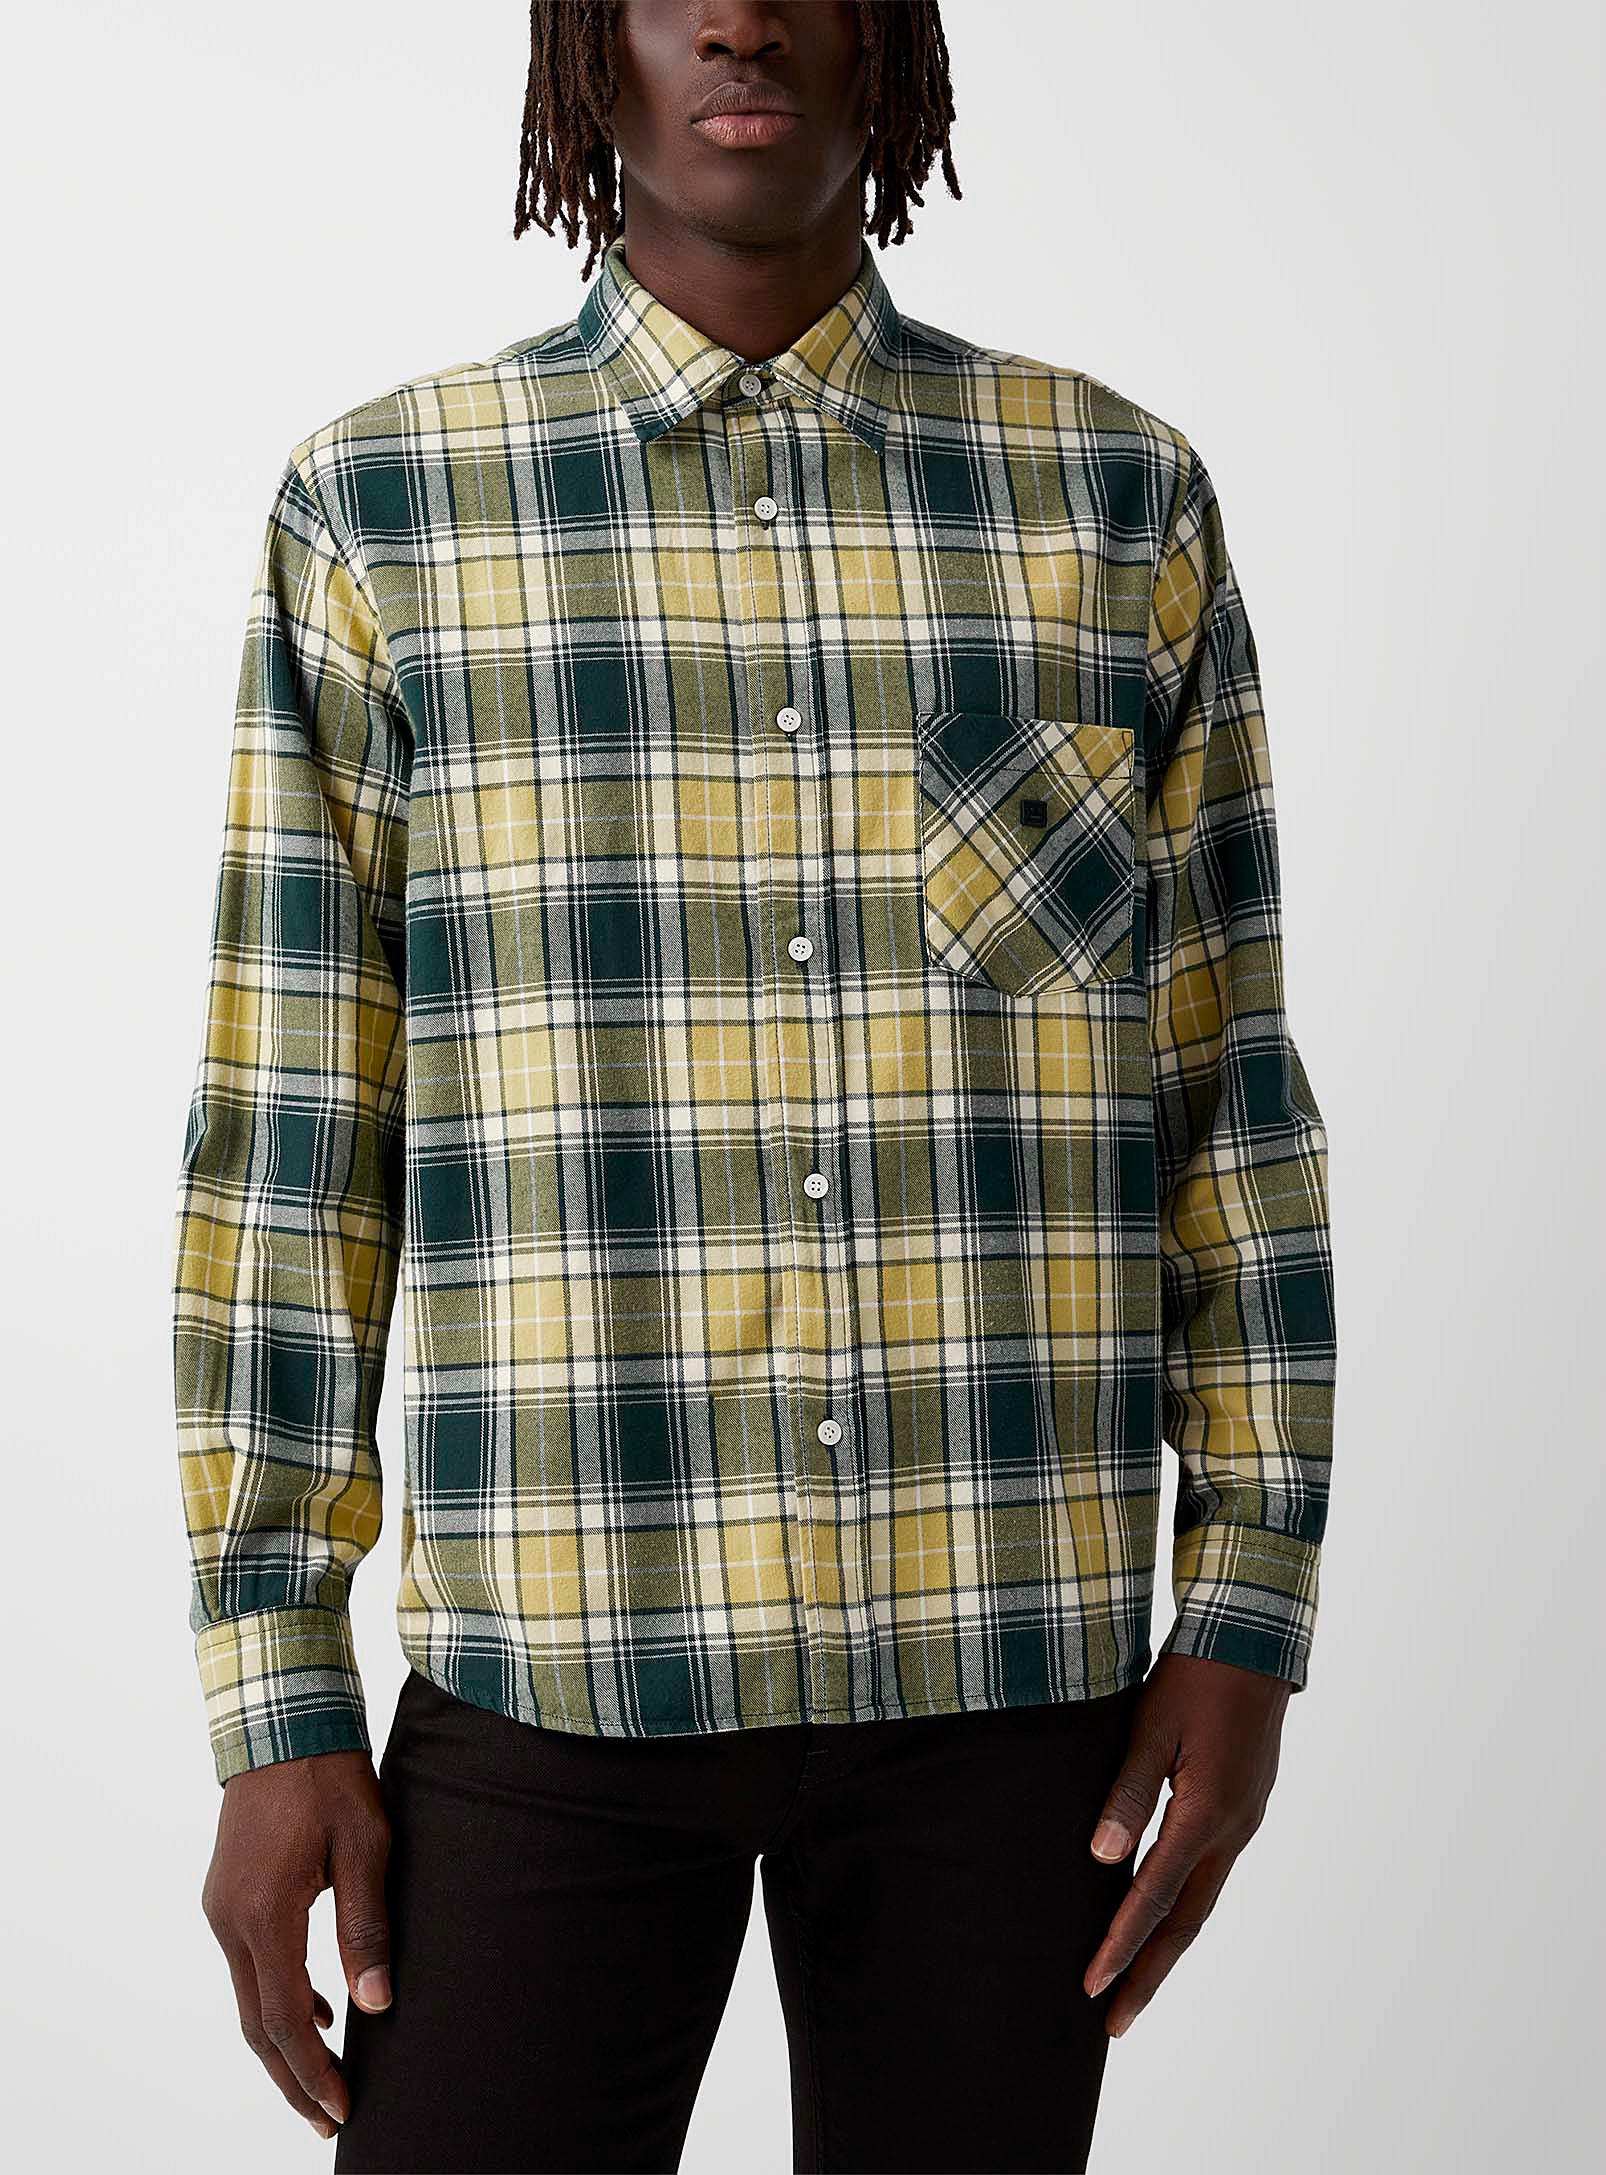 Acne Studios - Men's Face patch flannel shirt